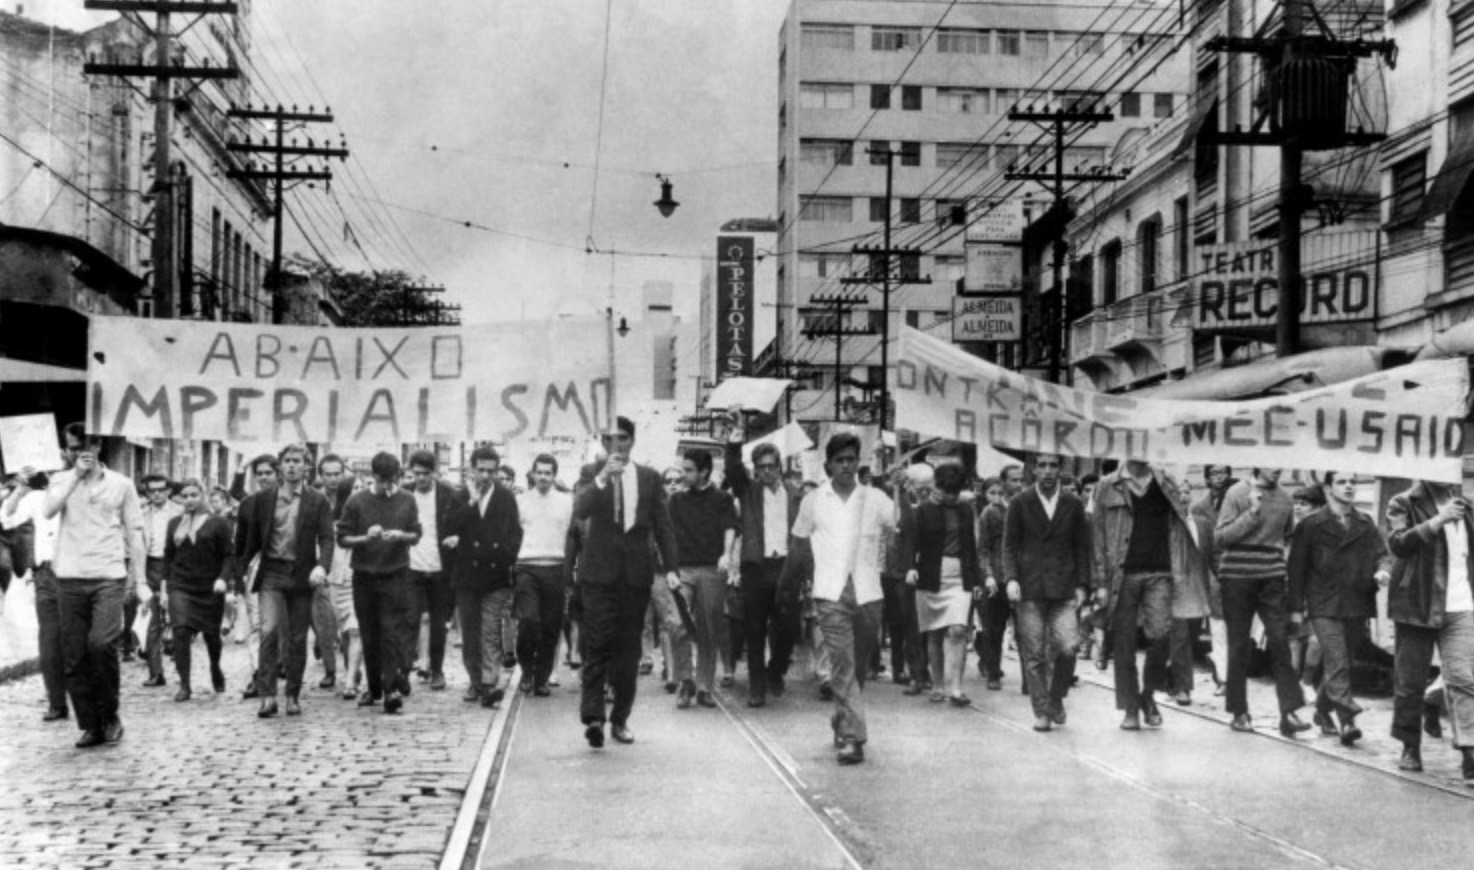 Estudantes protestam em São Paulo contra o acordo MEC-Usaid, em 1968: norte-americanos orientaram políticas educacionais no Brasil durante a ditadura (Foto: Reprodução)